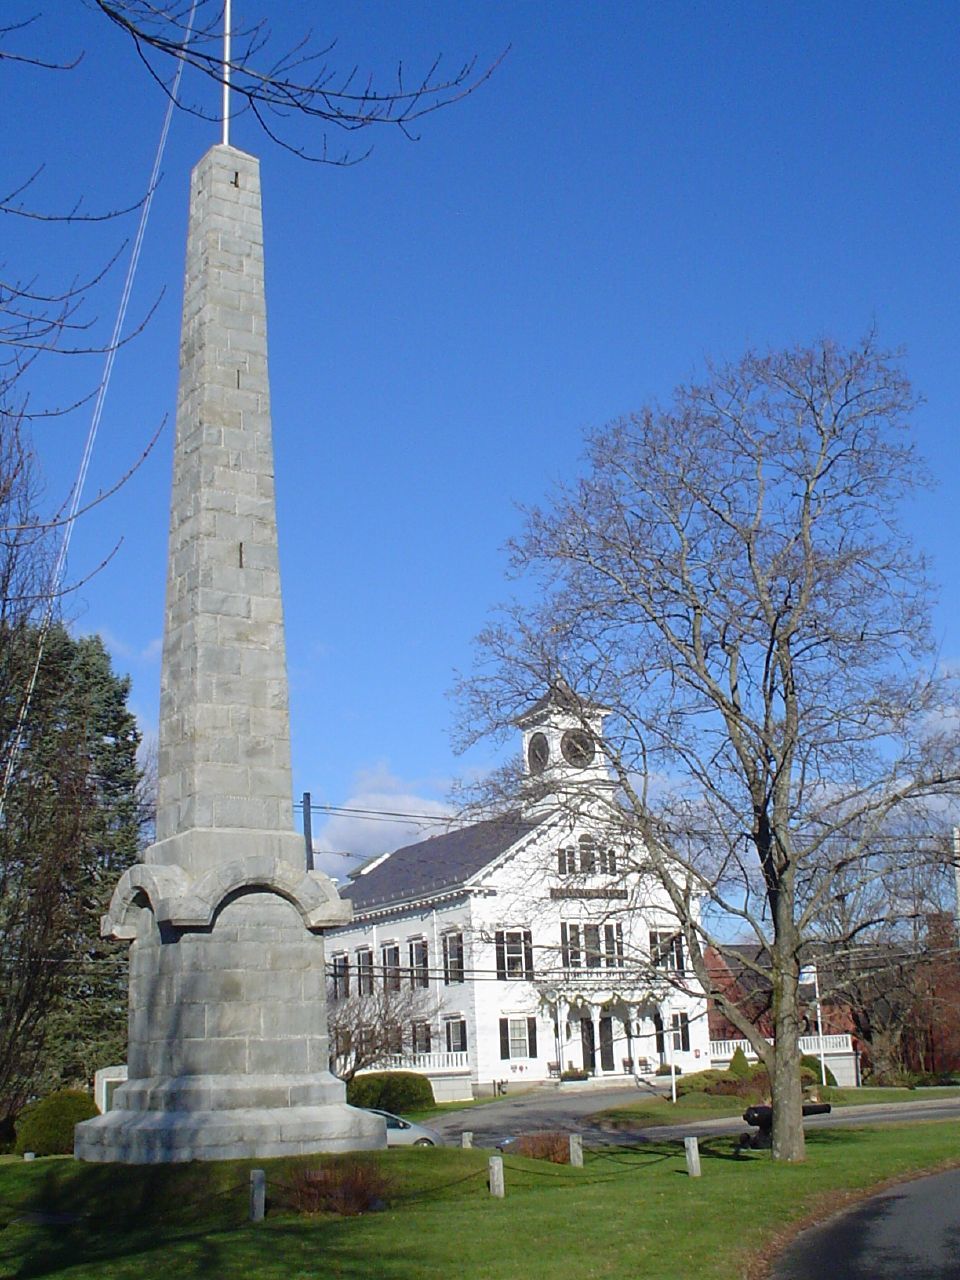 Davis Monument